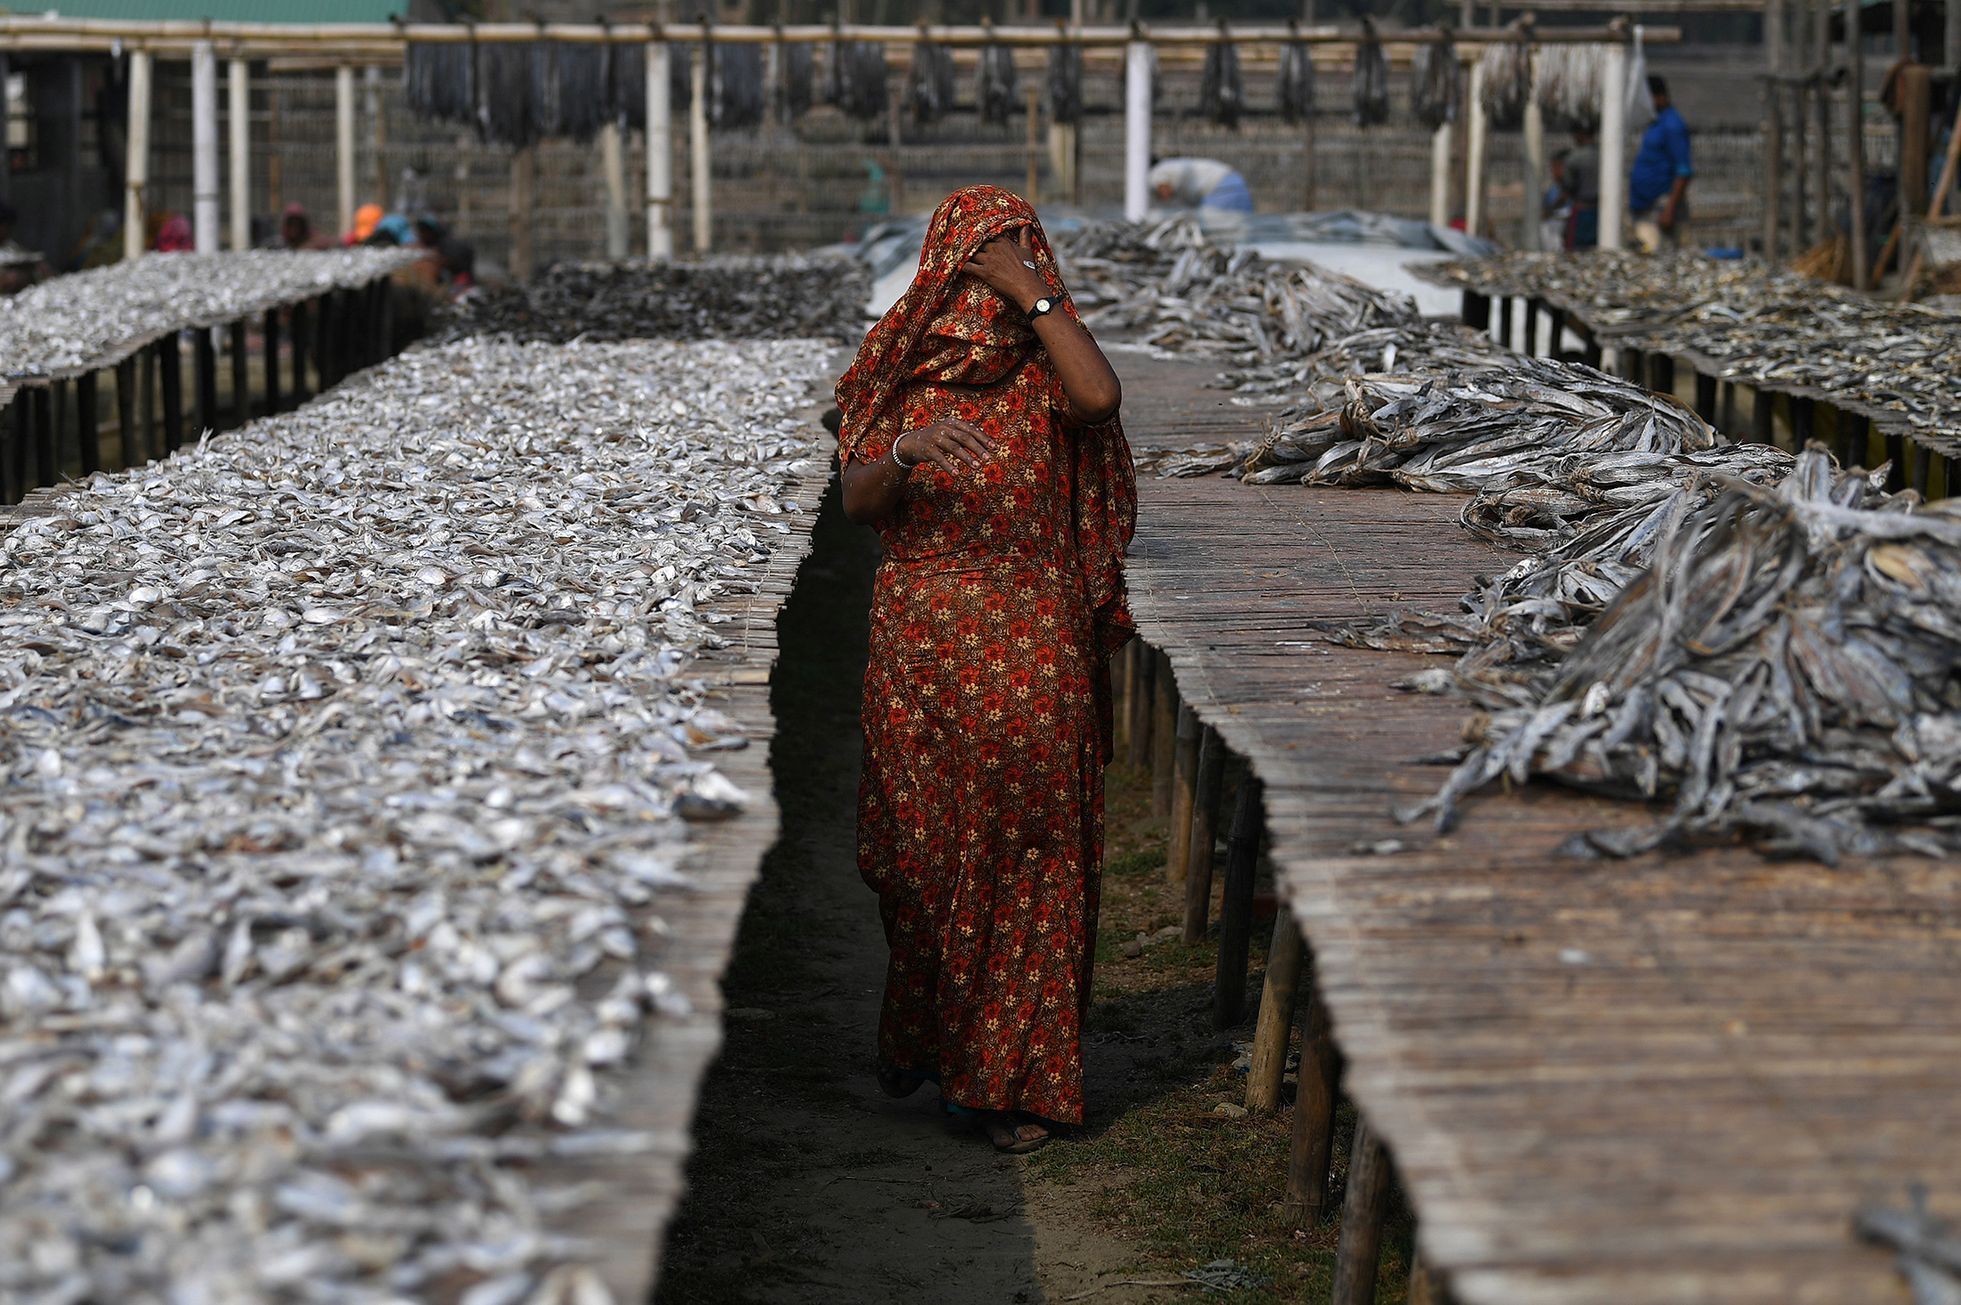 Fotogalerie / Rohingové v Bangladéši / Reuters / 15